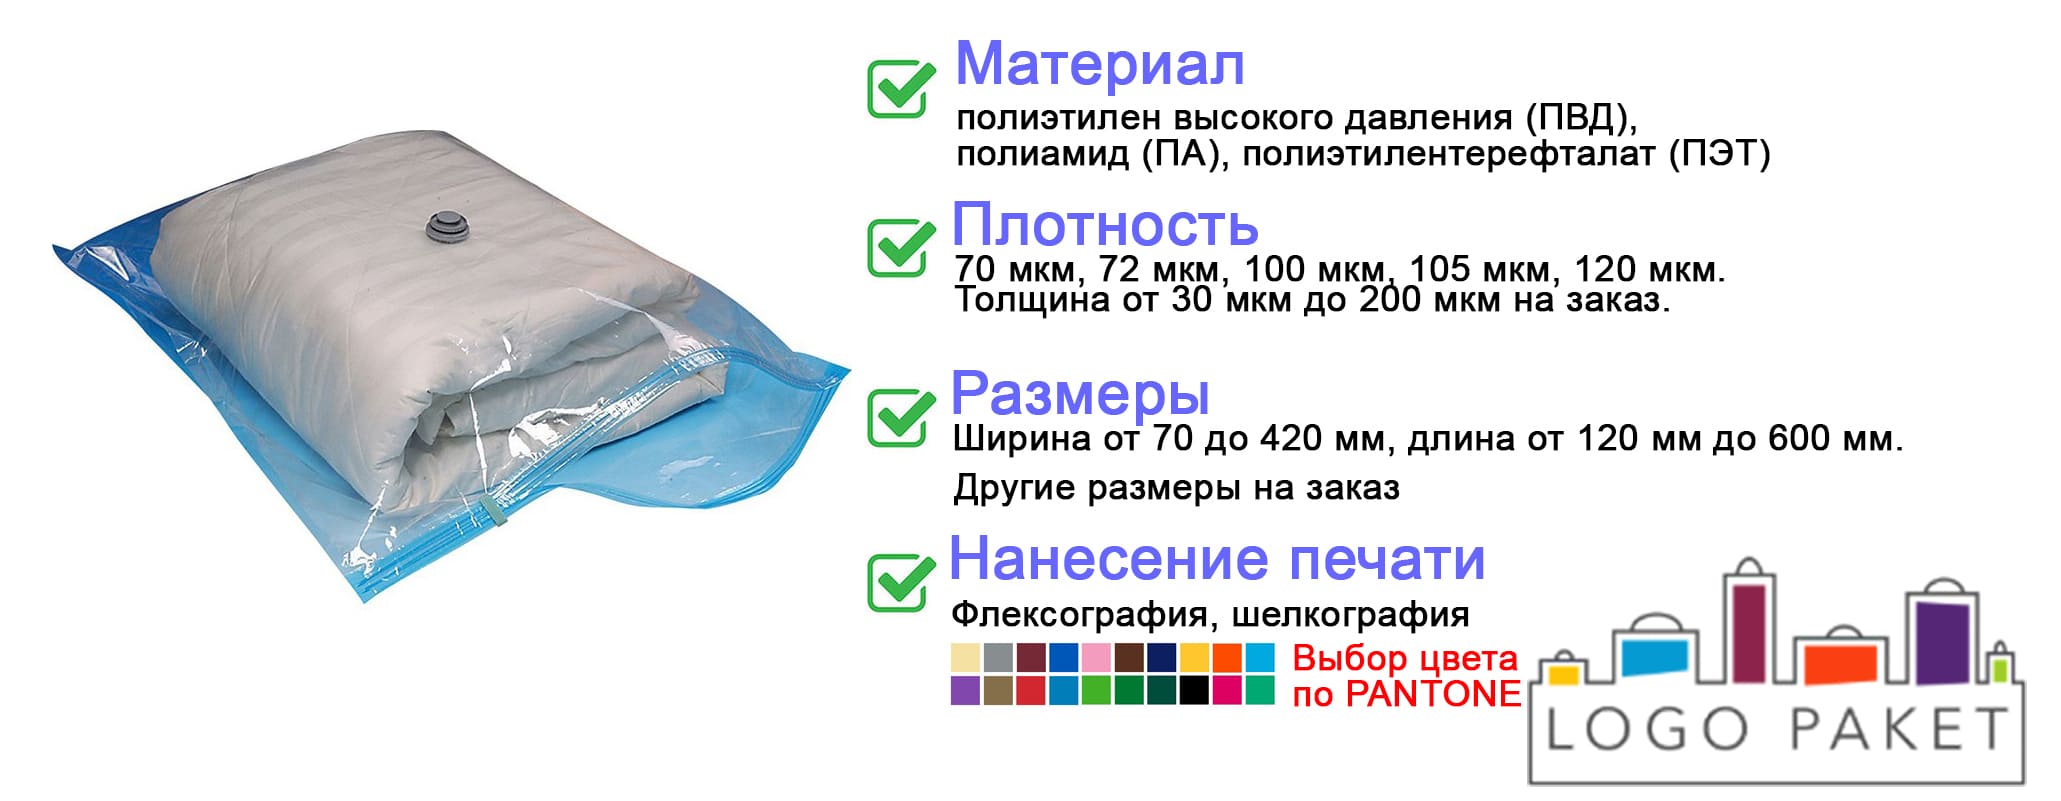  вакуумные пакеты  оптом у производителя | LogoPaket